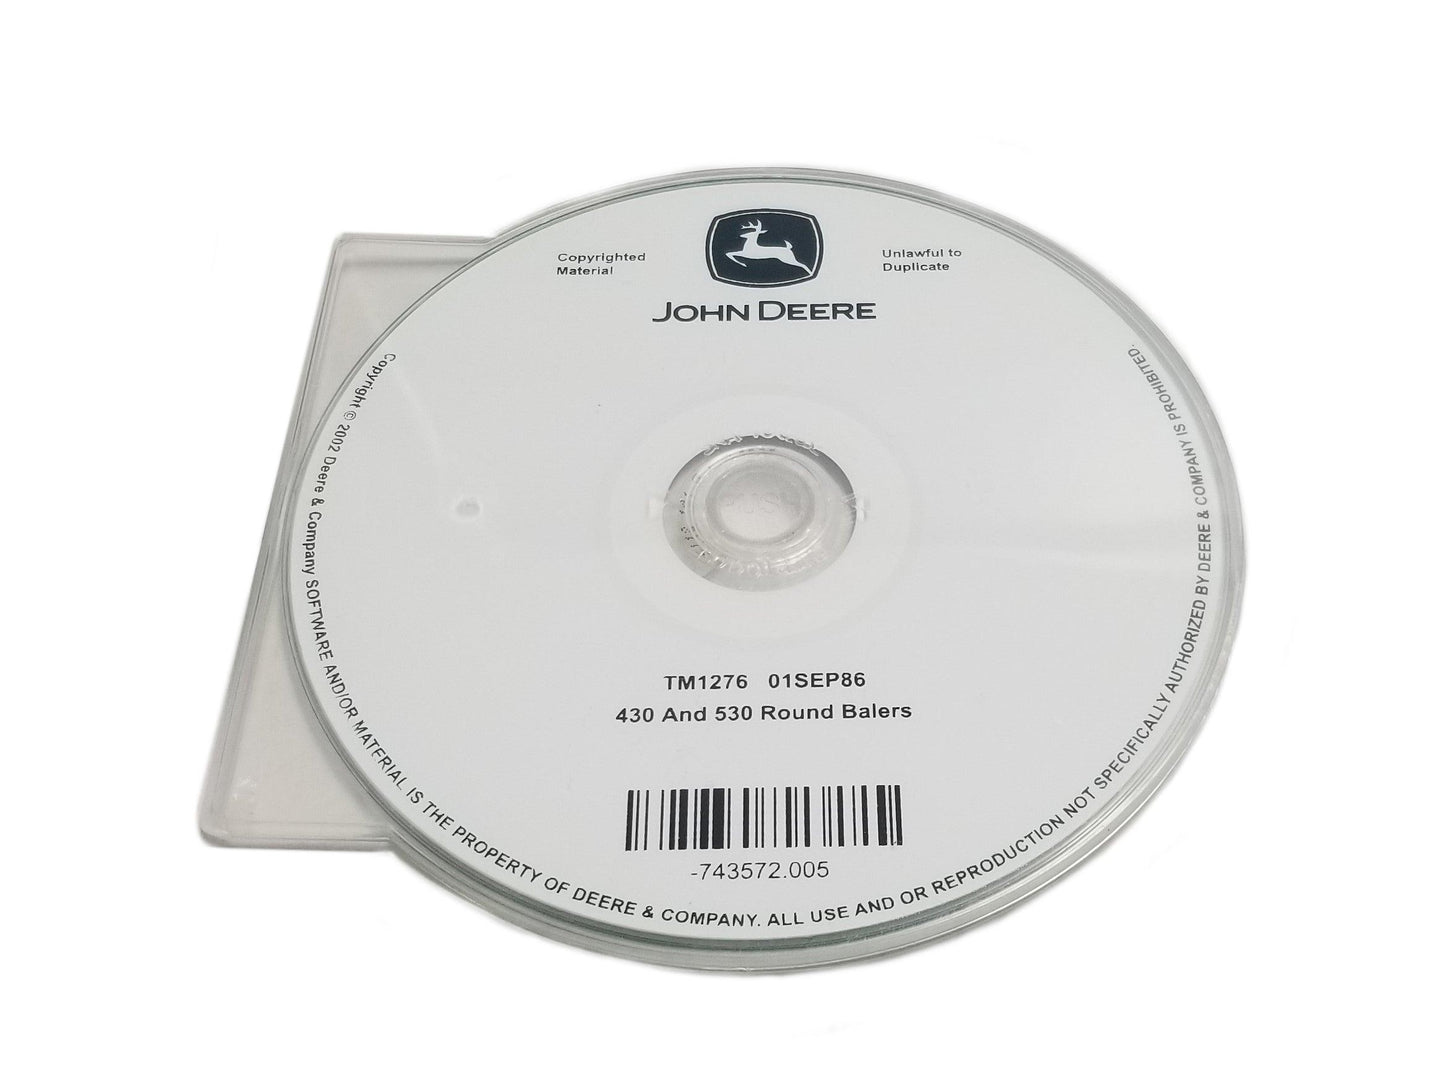 John Deere 430/530 Round Balers Technical CD Manual - TM1276CD